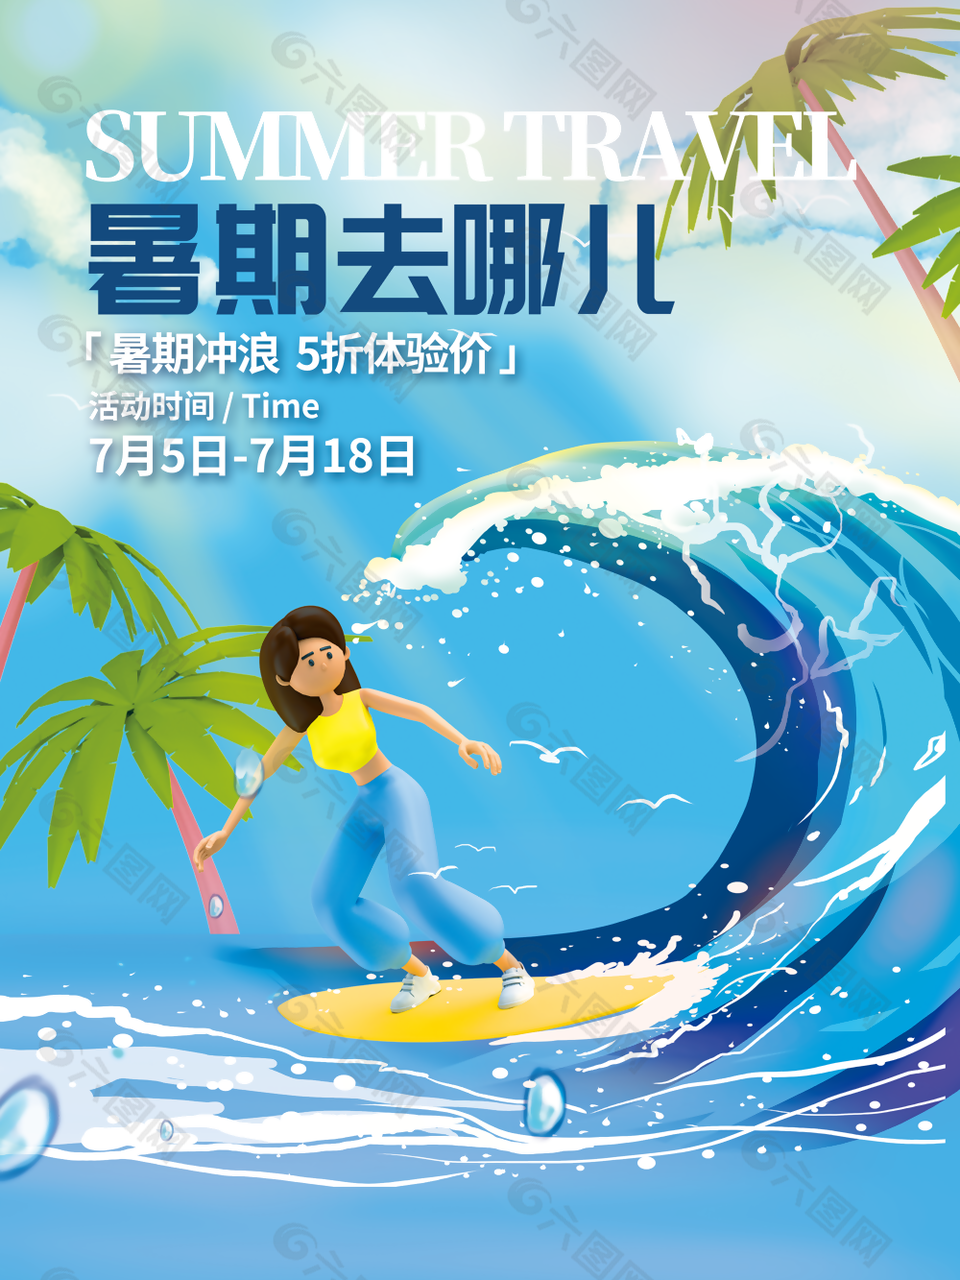 蓝色清新夏日娱乐冲浪旅游海报设计